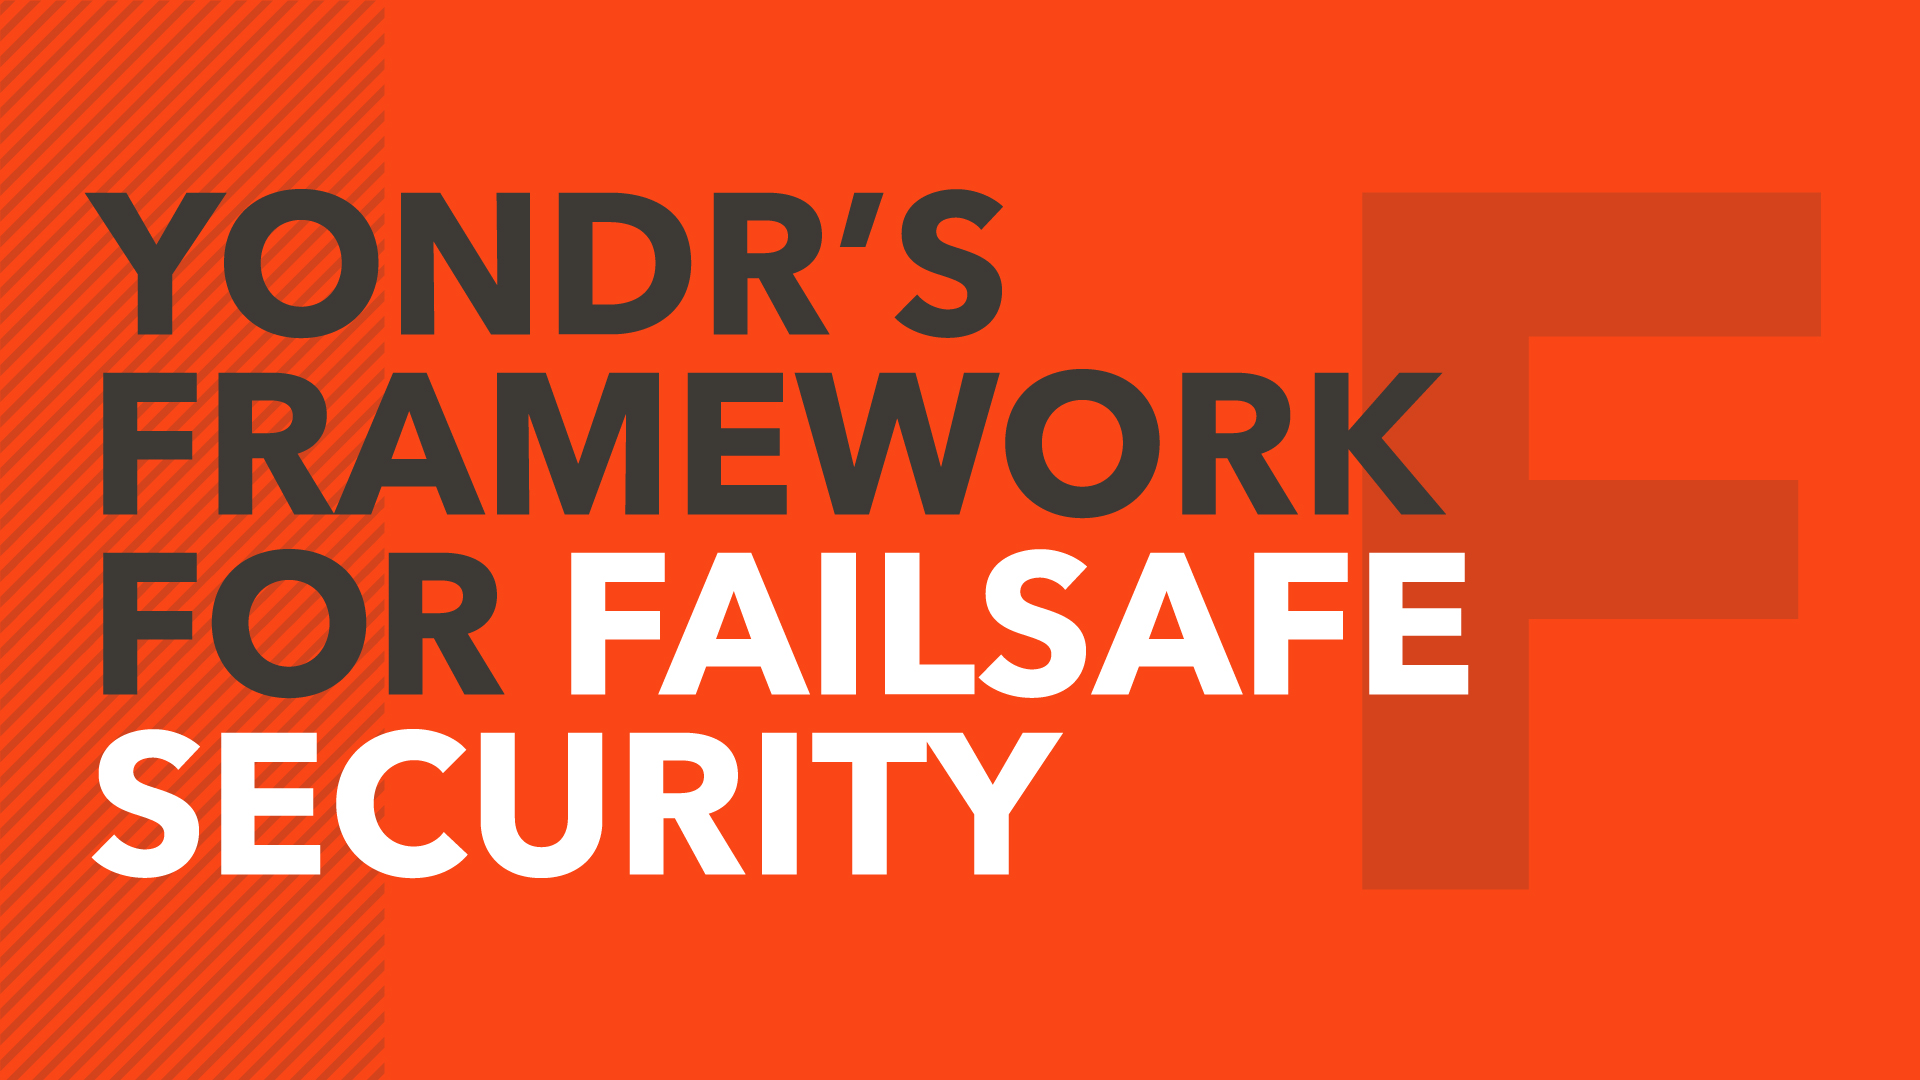 Yondr’s framework for failsafe security